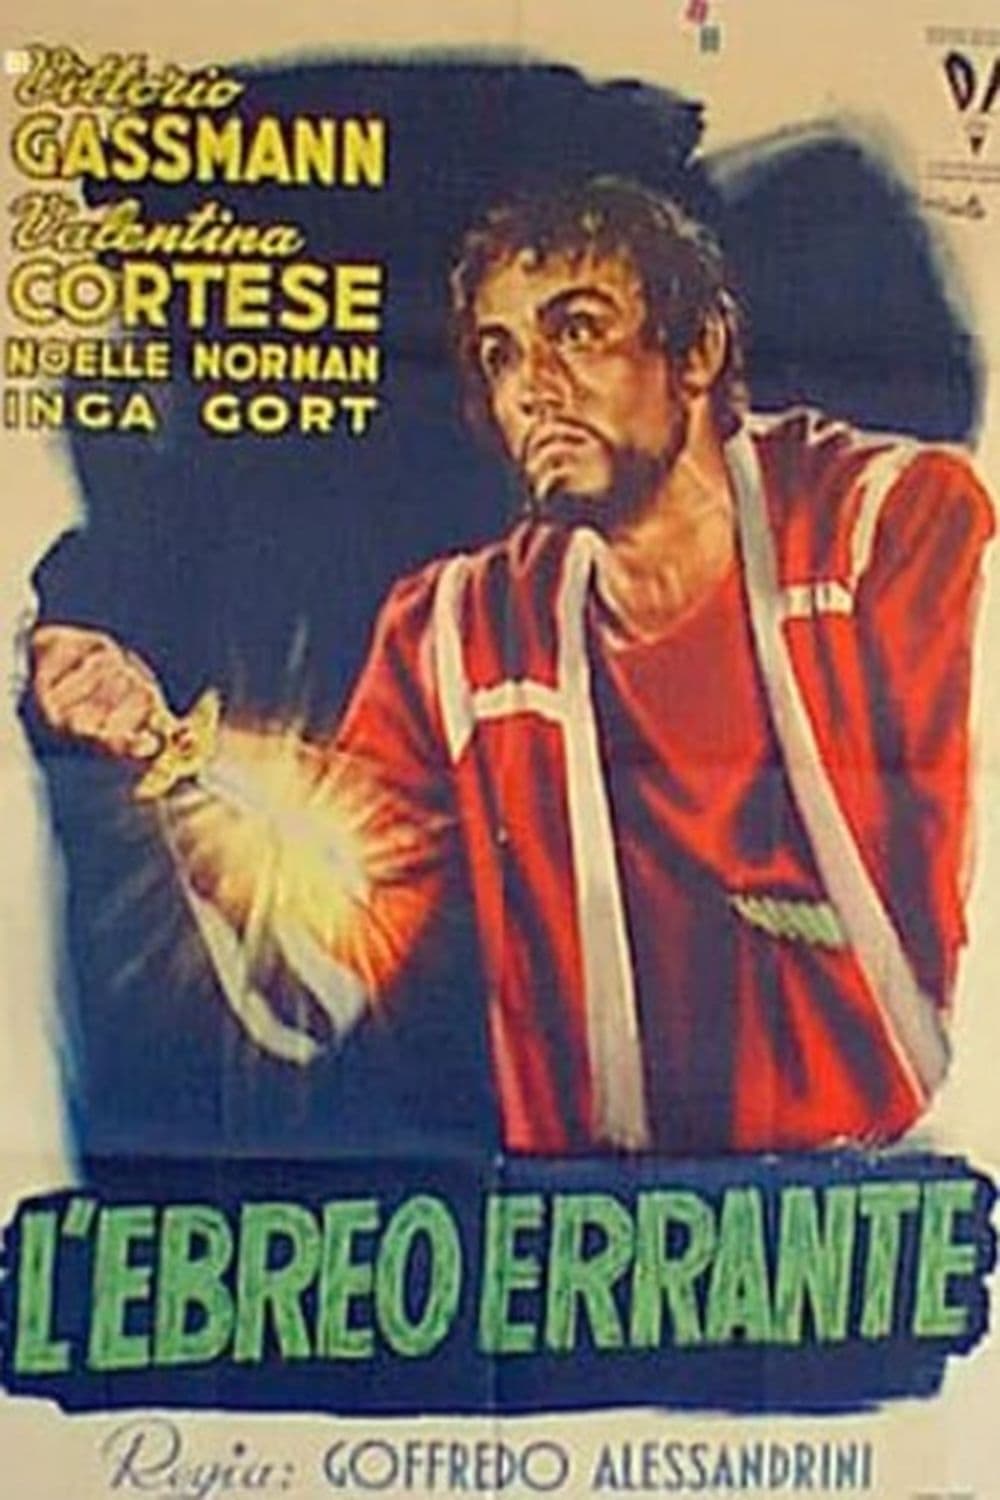 L'ebreo errante (1948)